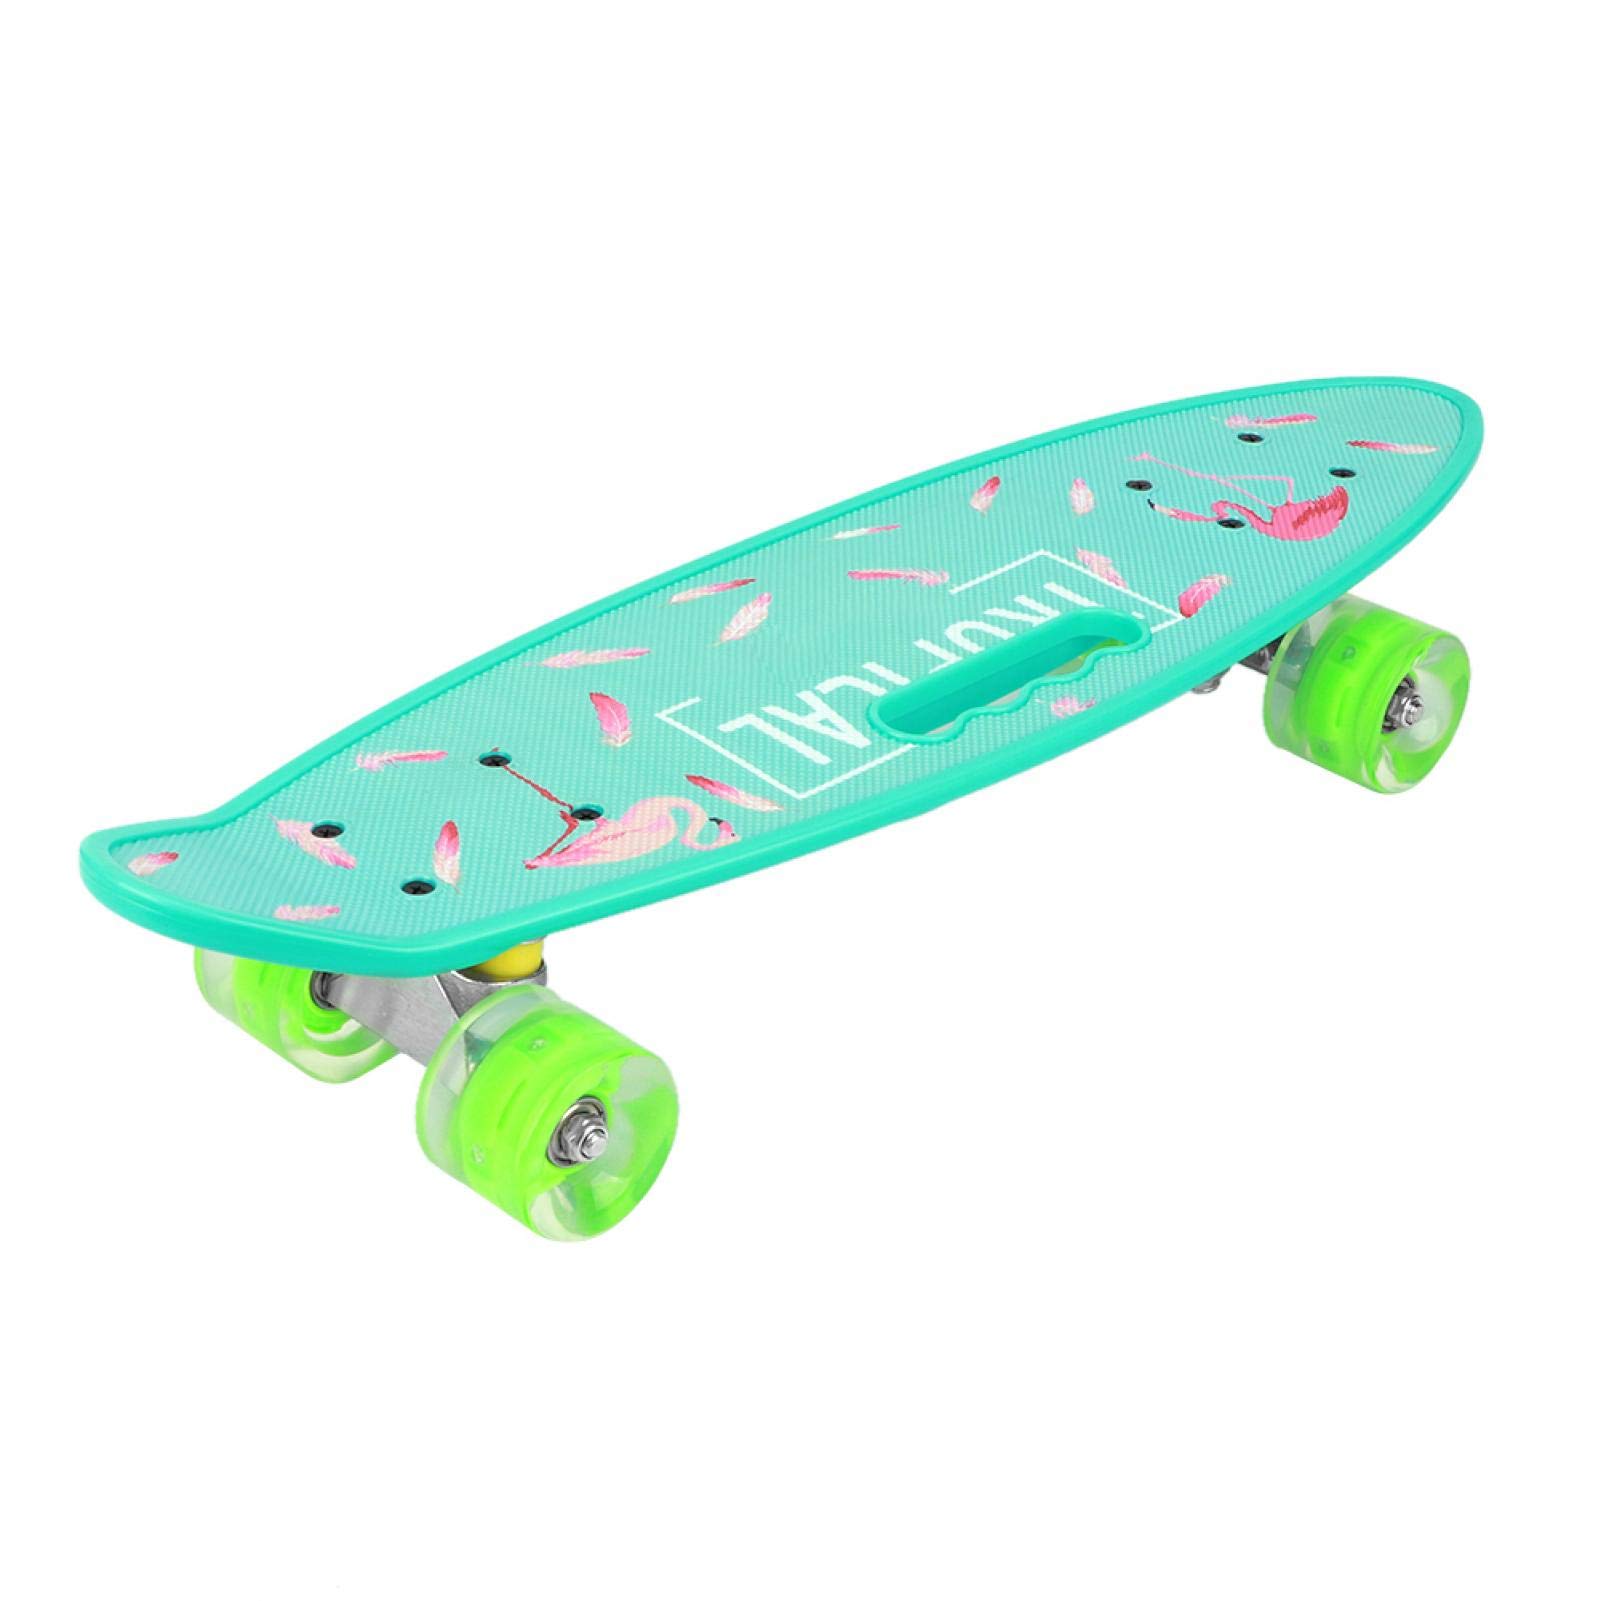 Skateboard-Deck, Wheelive Longboard Skateboard, sicher zu bedienen, Fisch-Skateboard, Handboard, kleines Fisch-Skateboard für Straßentanz, für Jugendliche, Kinder, Anfänger